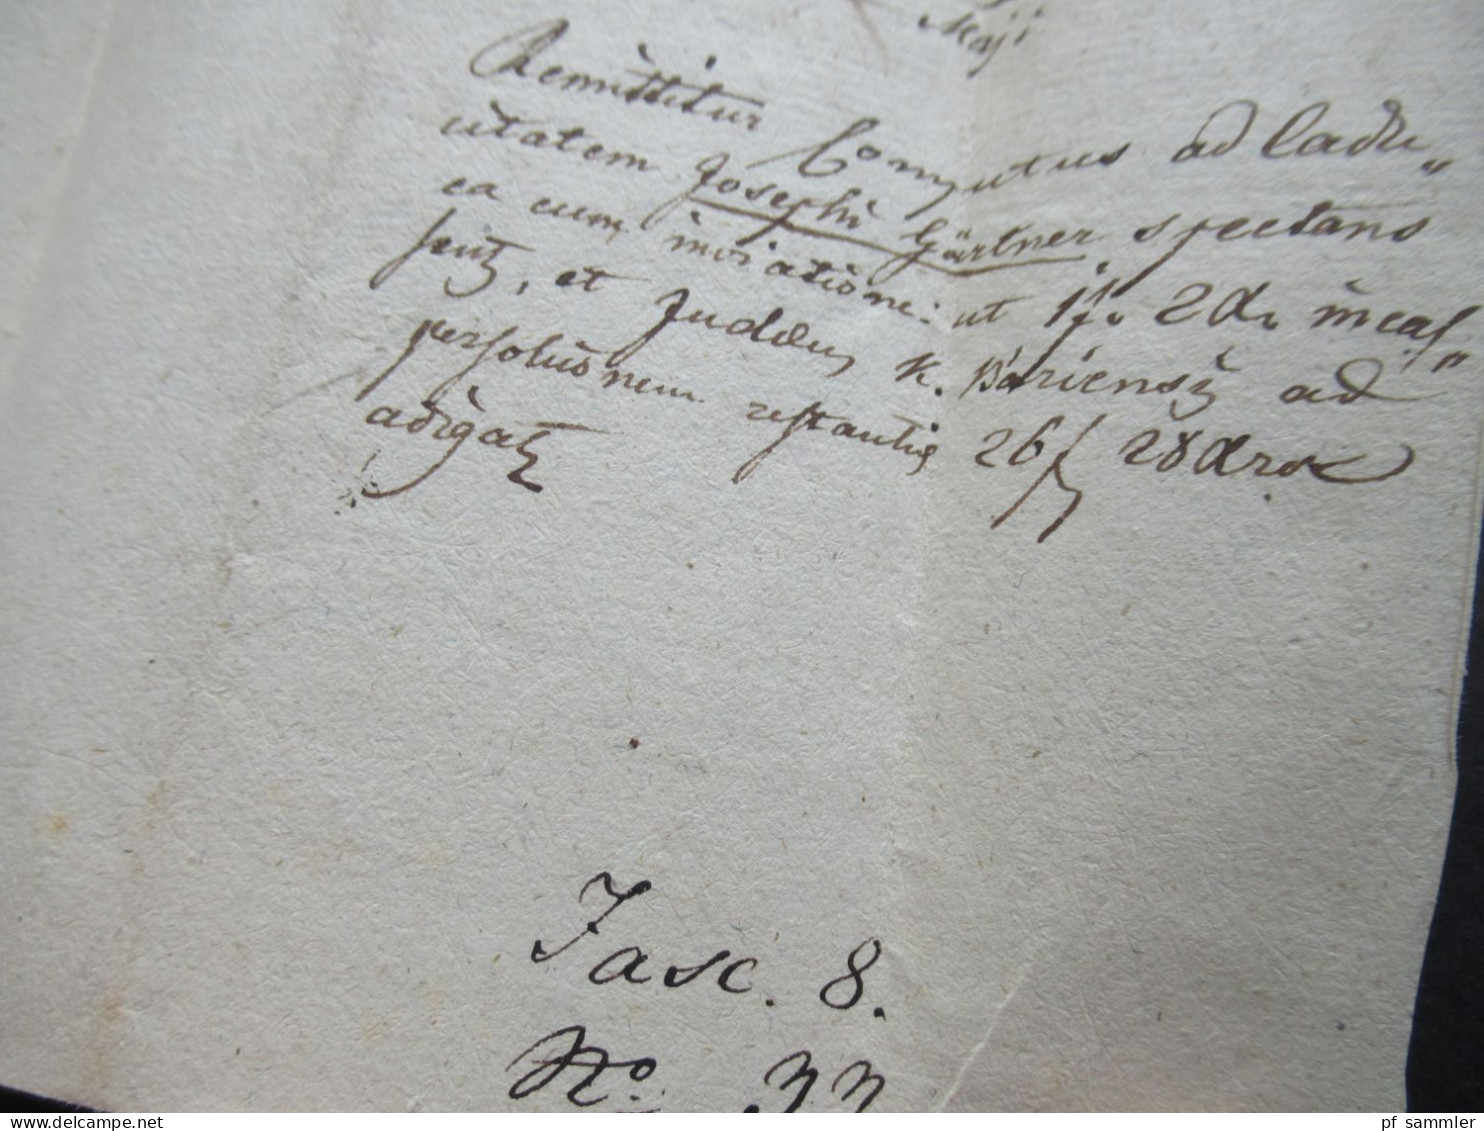 Österreich Ungarn Vorphila 1825 Ovalstempel Pest mit Papiersiegel nach Kaposvari / Kaposvarini mit Inhalt und Autograph